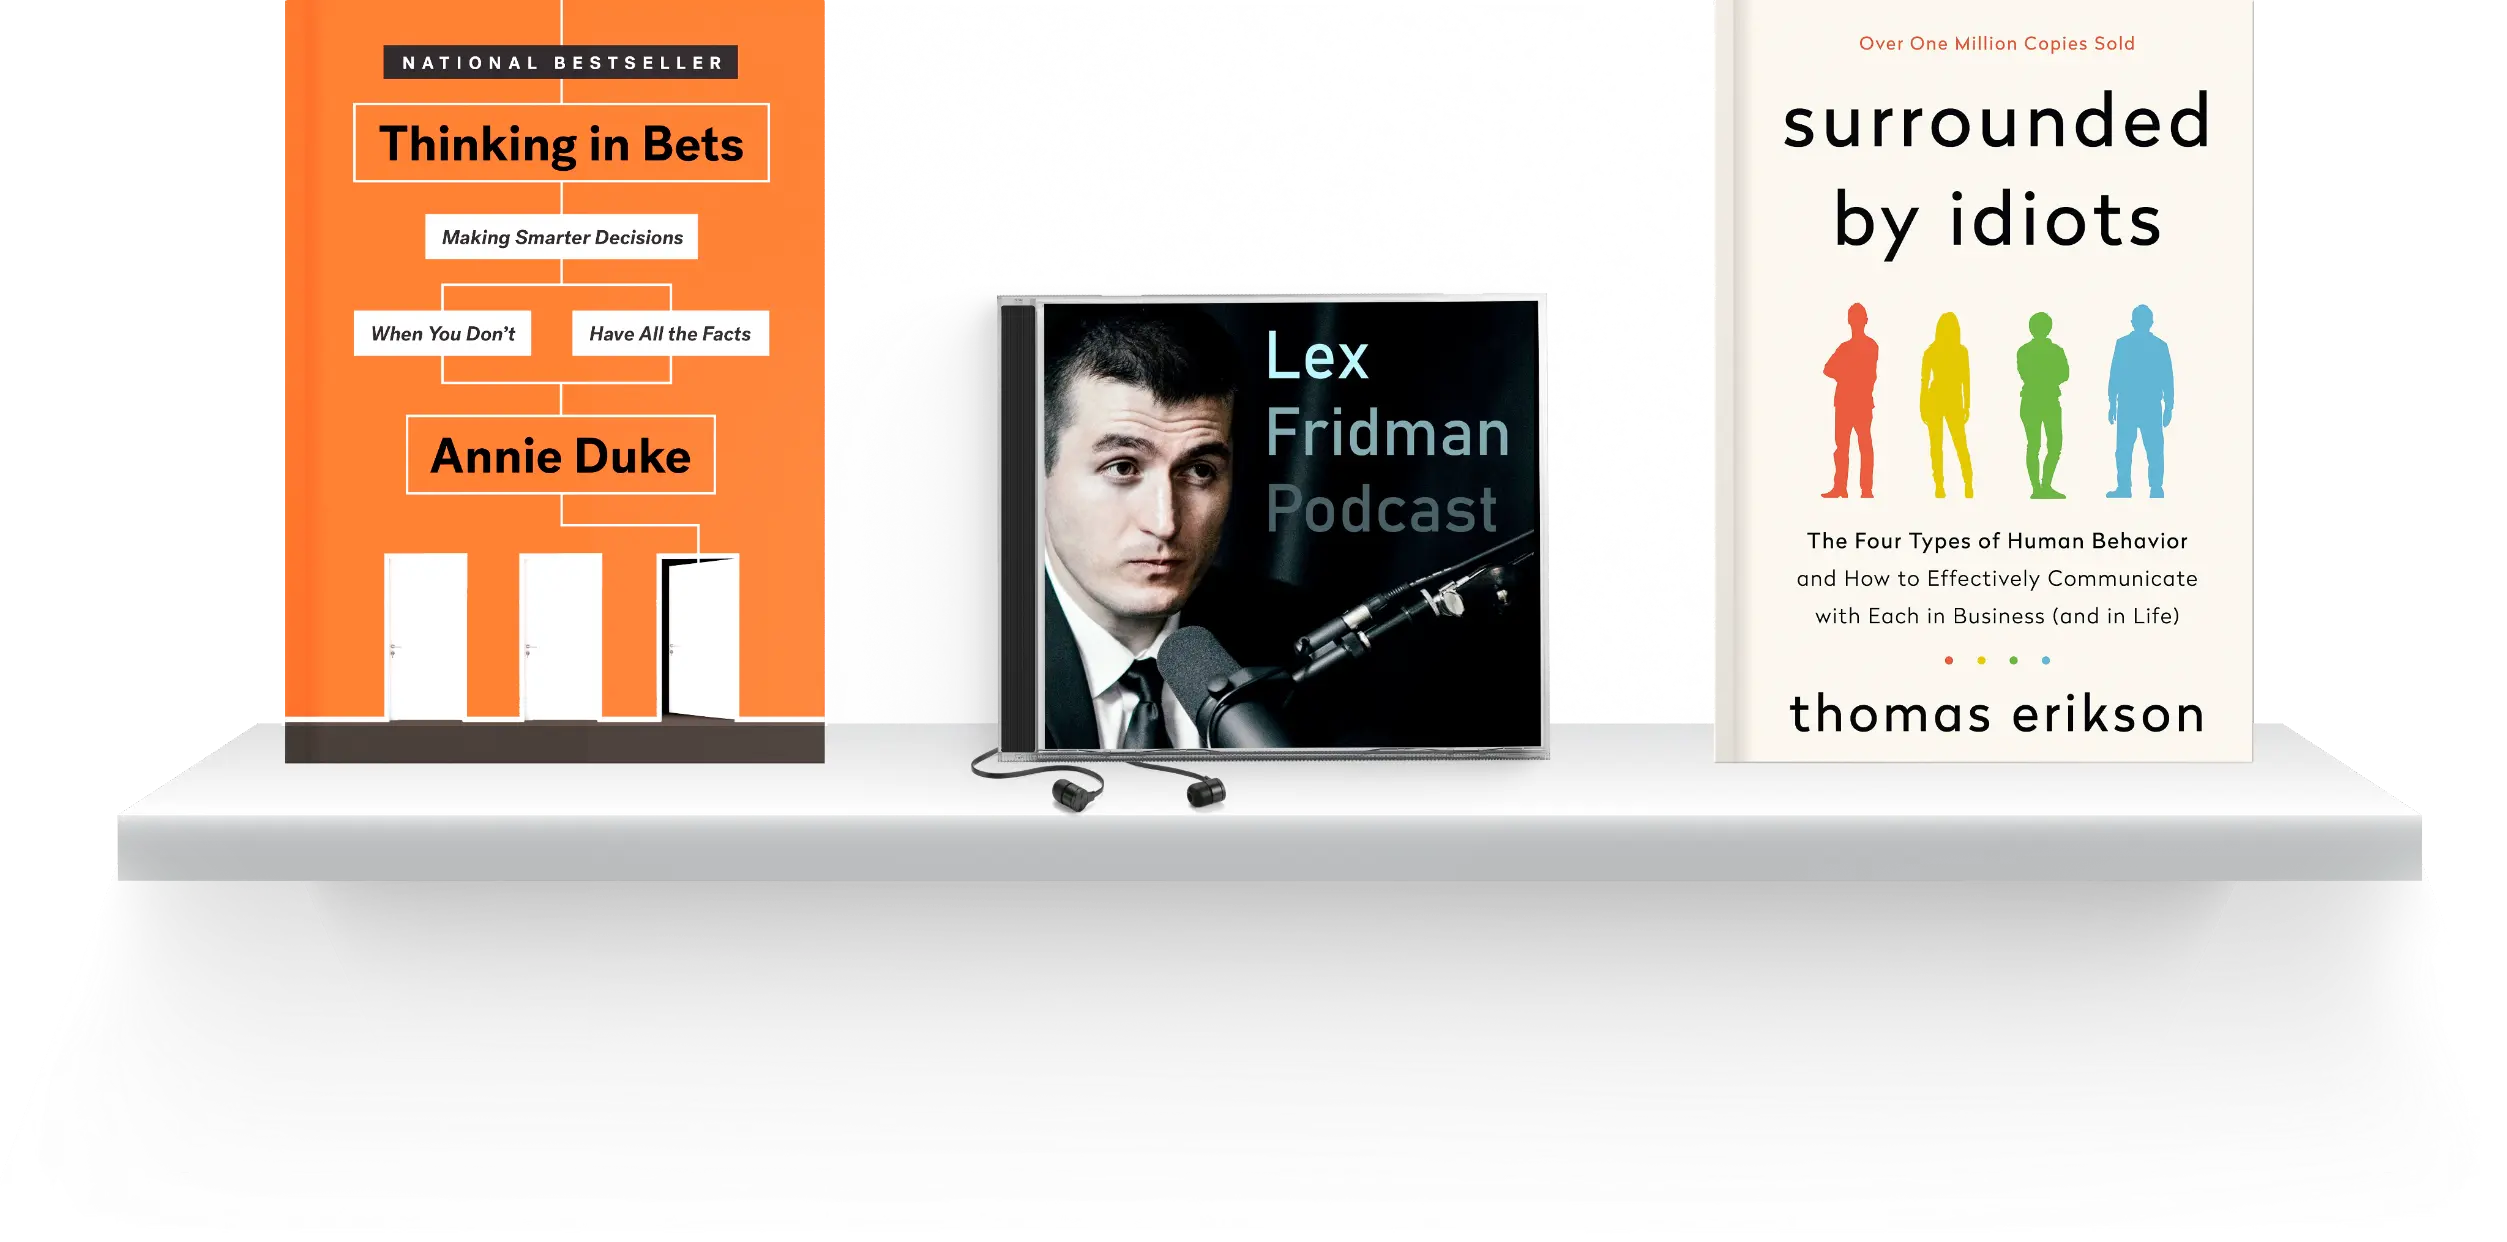 17 Surprising Facts About Lex Fridman 